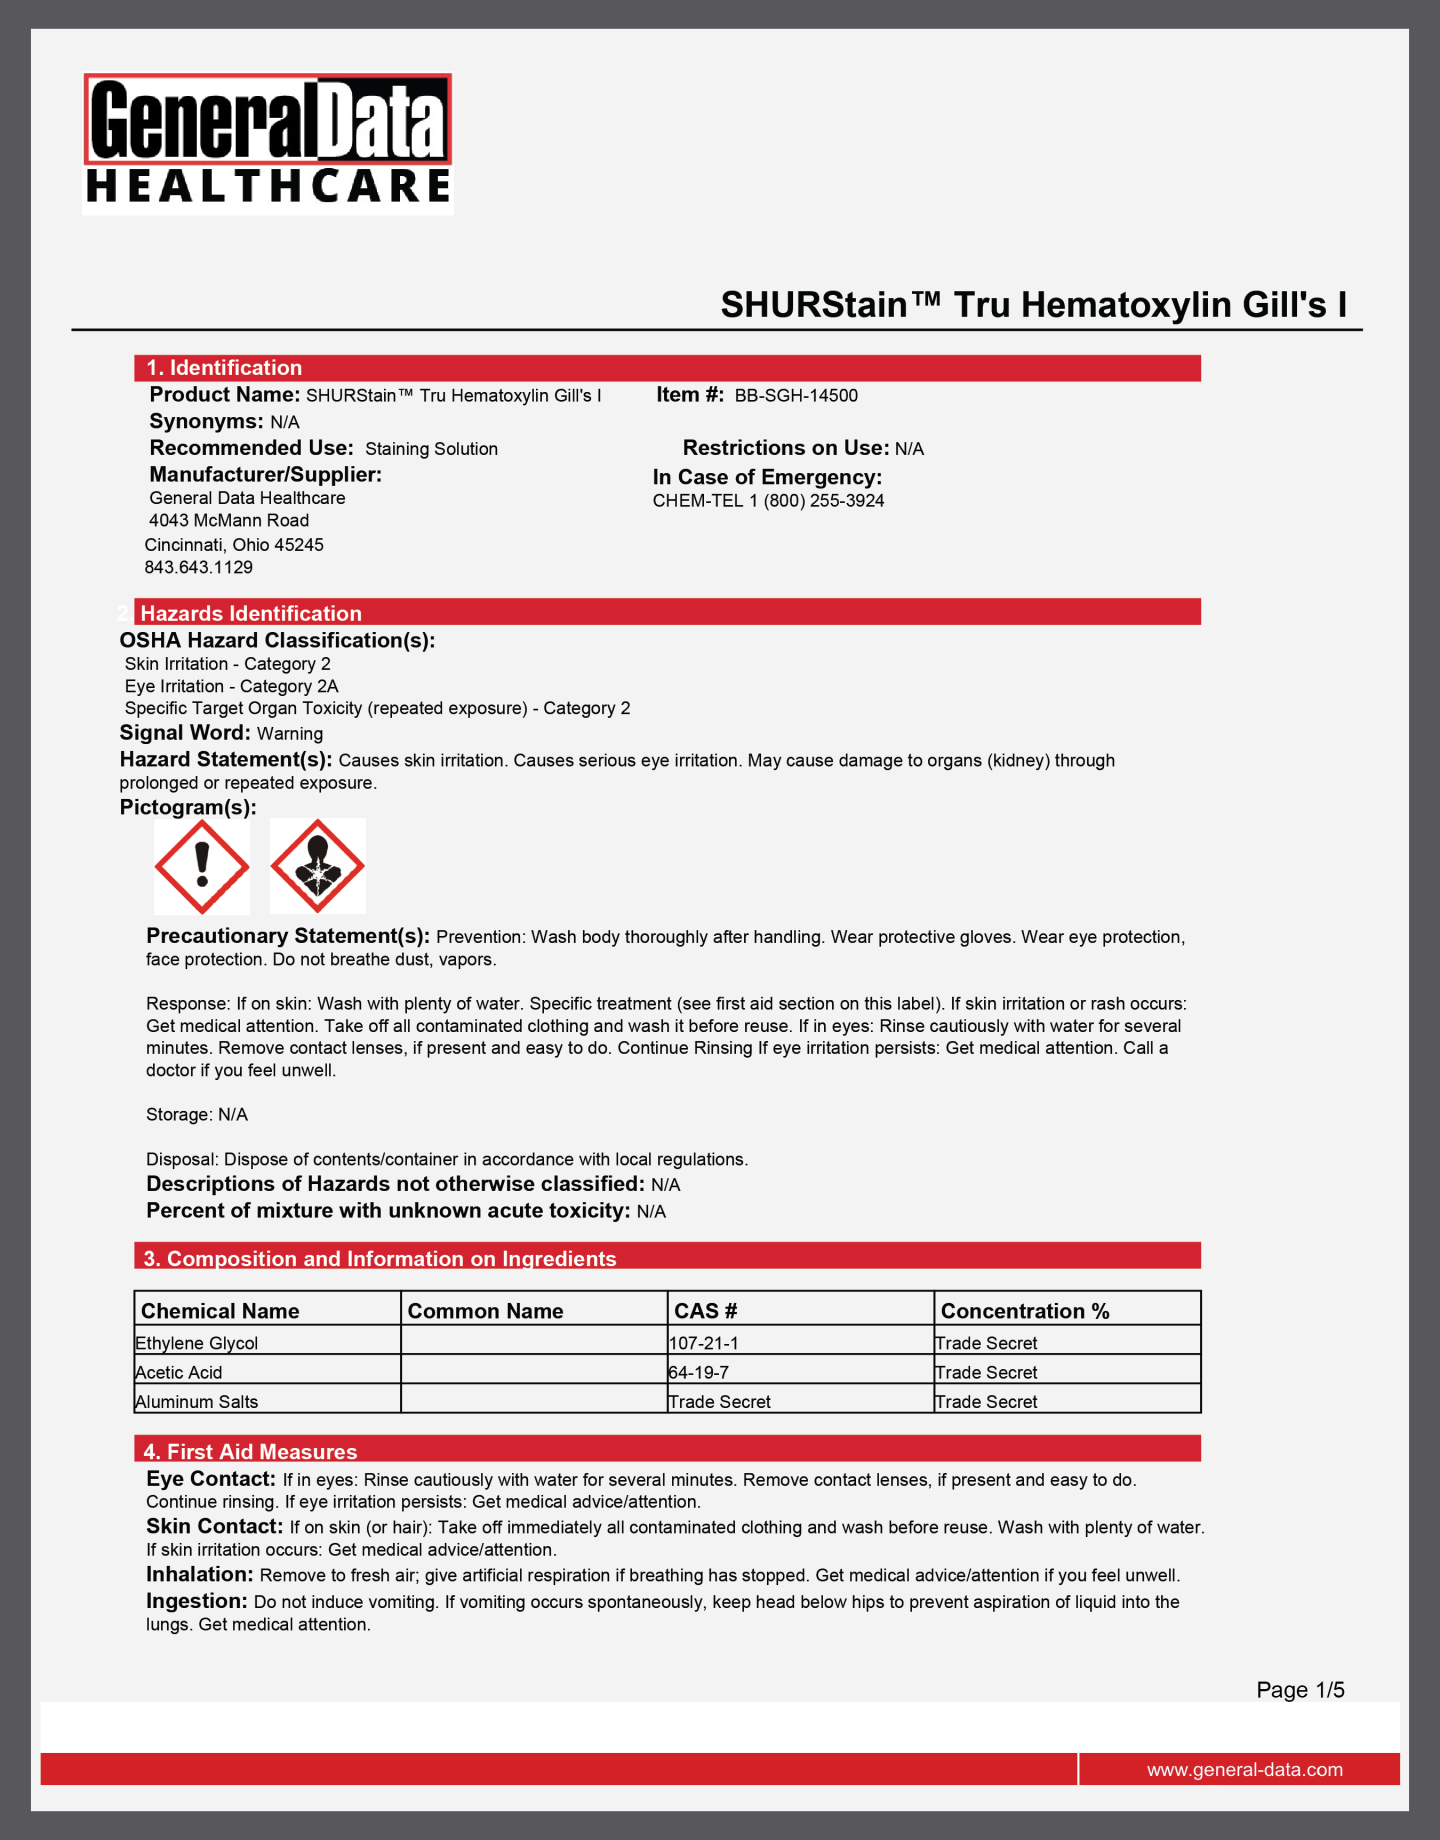 SHURStain Tru Hematoxylin Gill's I Safety Data Sheet